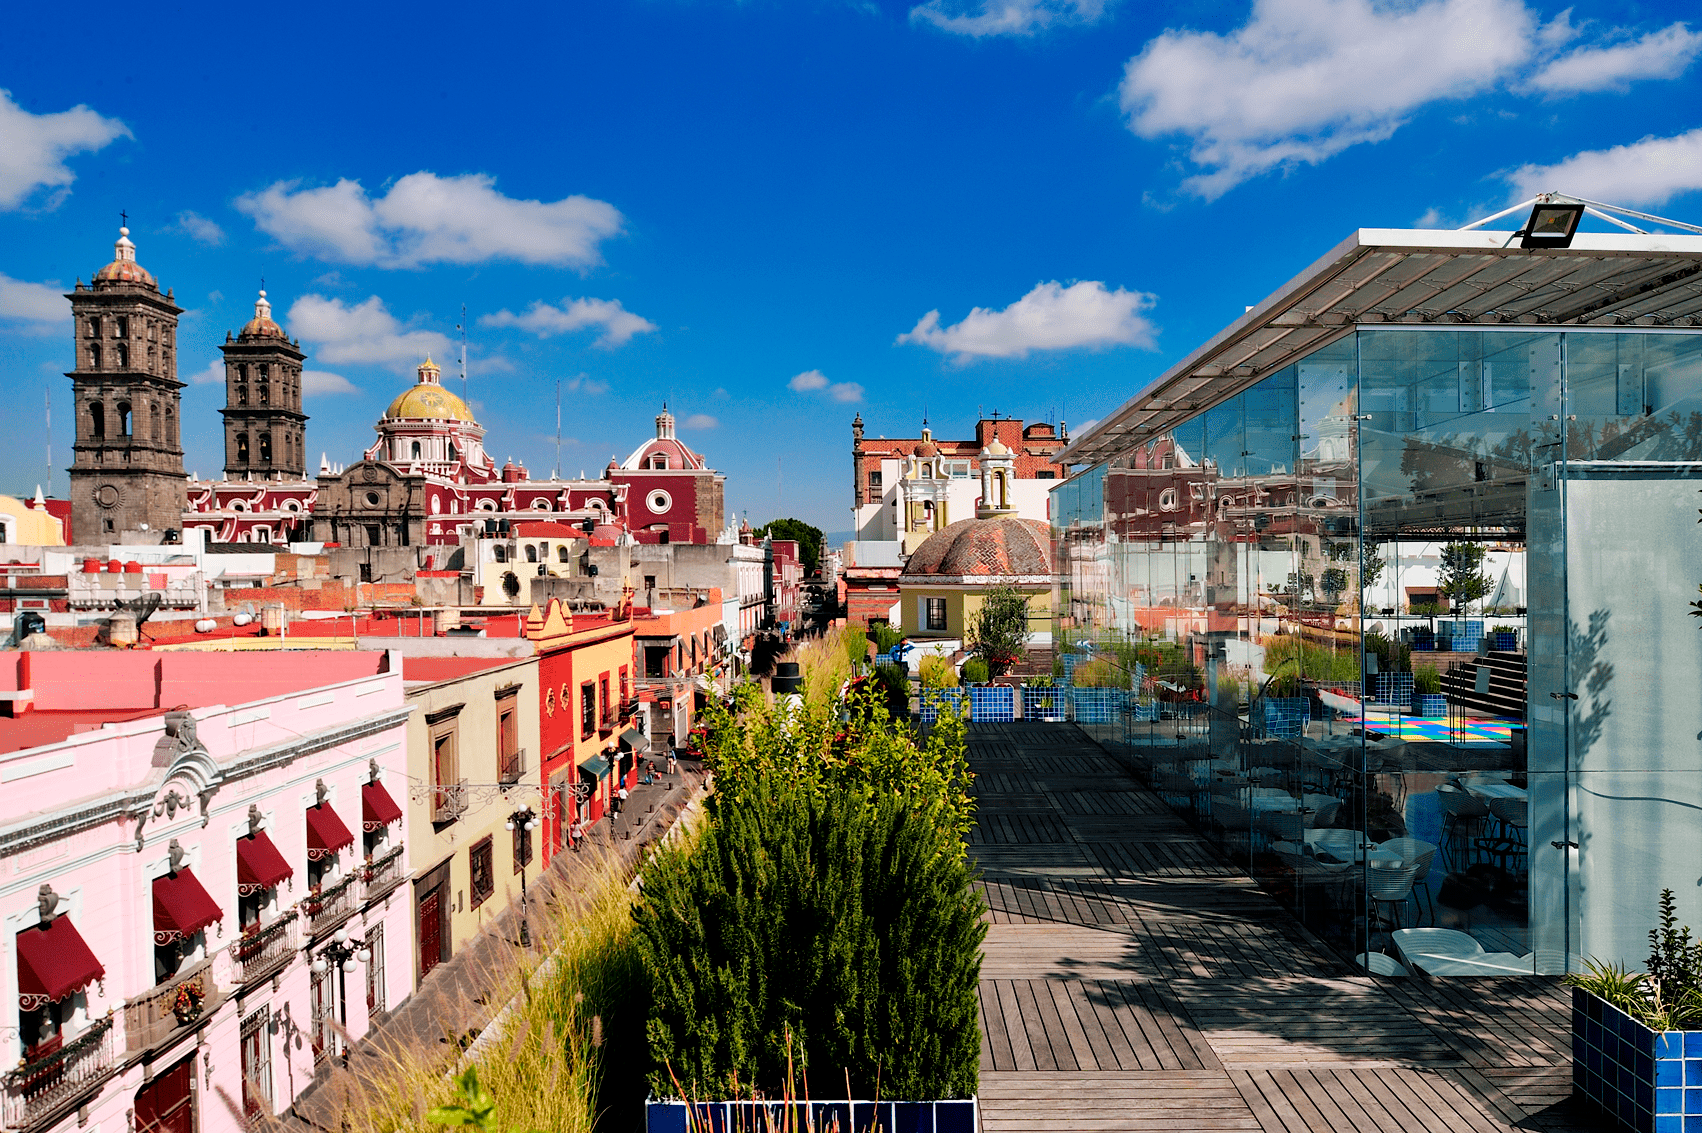 Top 5: ¿Qué terrazas visitar en Puebla?